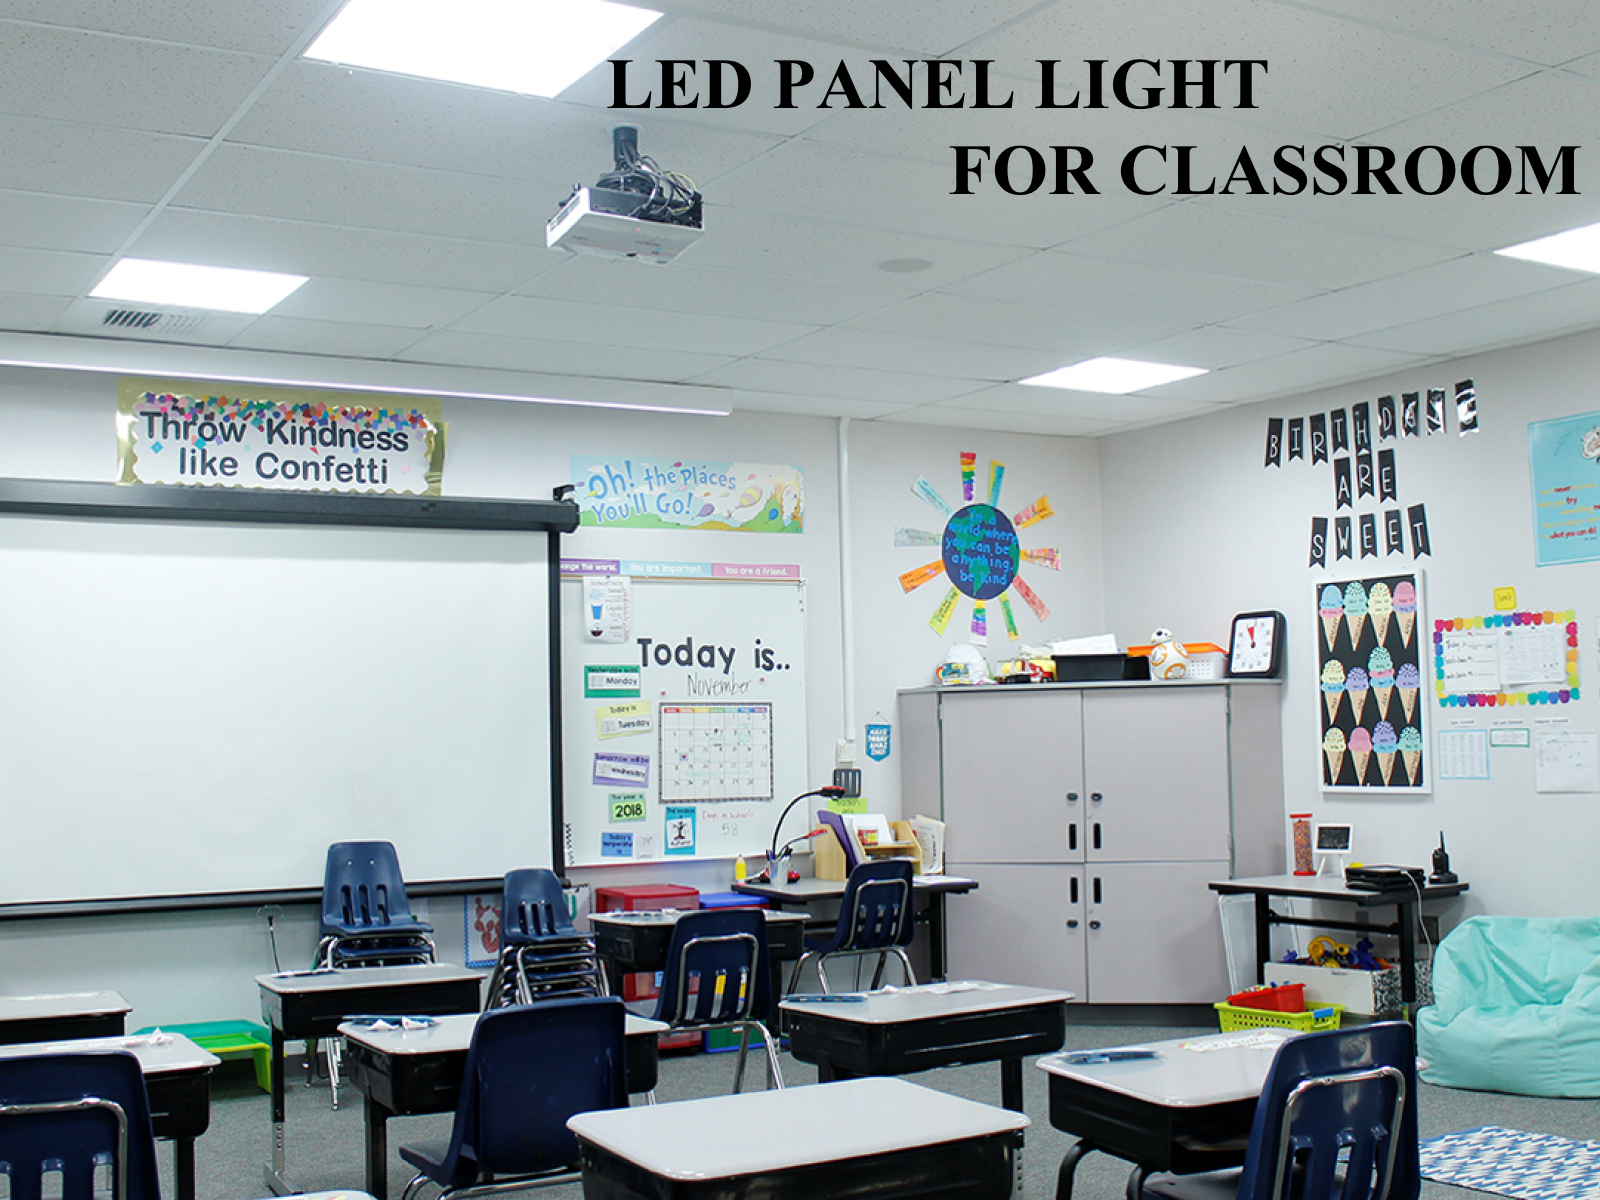 教室用 LED ランプの照度、電力、色温度要件、および設置仕様